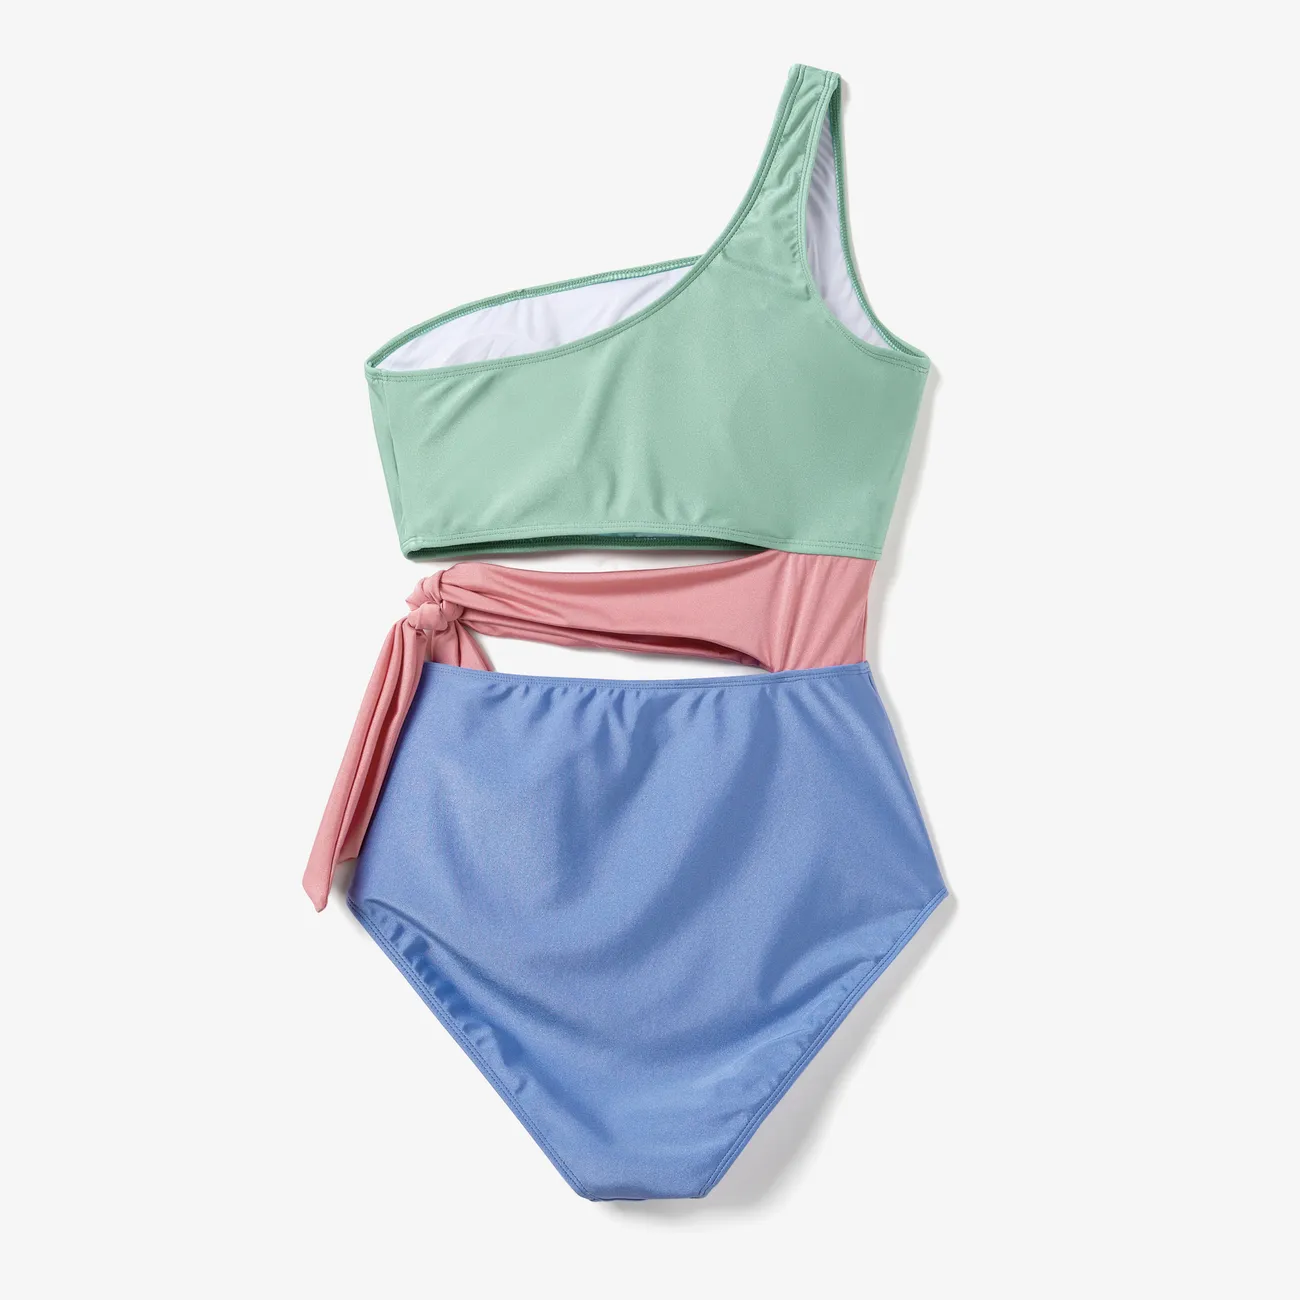 ملابس السباحة إطلالة العائلة للجنسين خياطة النسيج لون سادة كتلة اللون big image 1